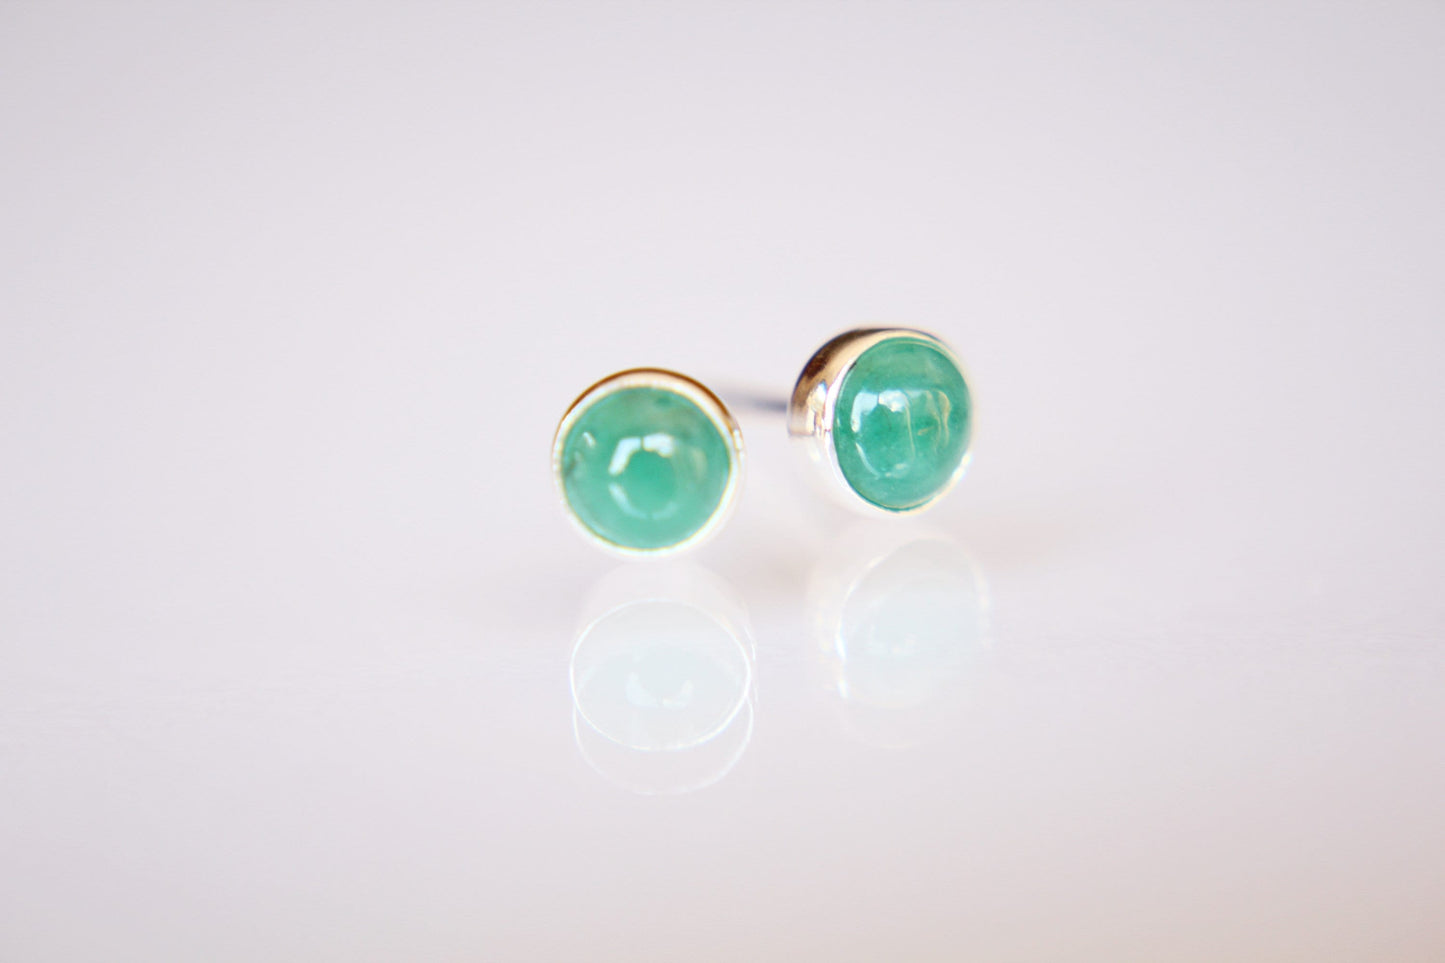 Emerald Earrings, Gemstone Earrings, Sterling Earrings, Post Earrings, Green Post Earrings, Small Earrings, Minimalist Earrings, Gift